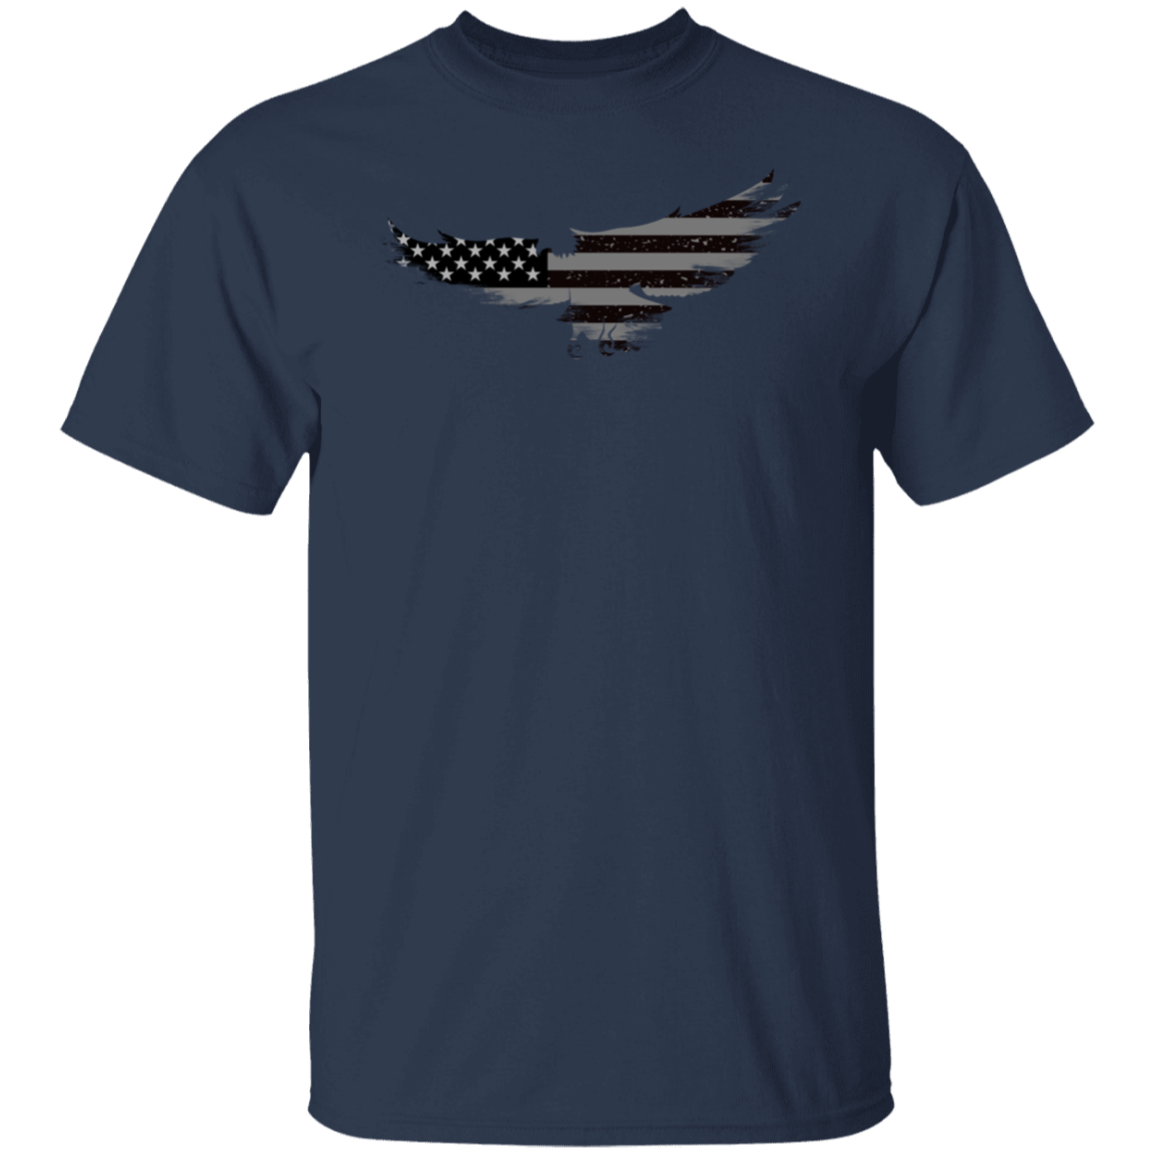 USA Eagle Flag T Shirt - Unisex